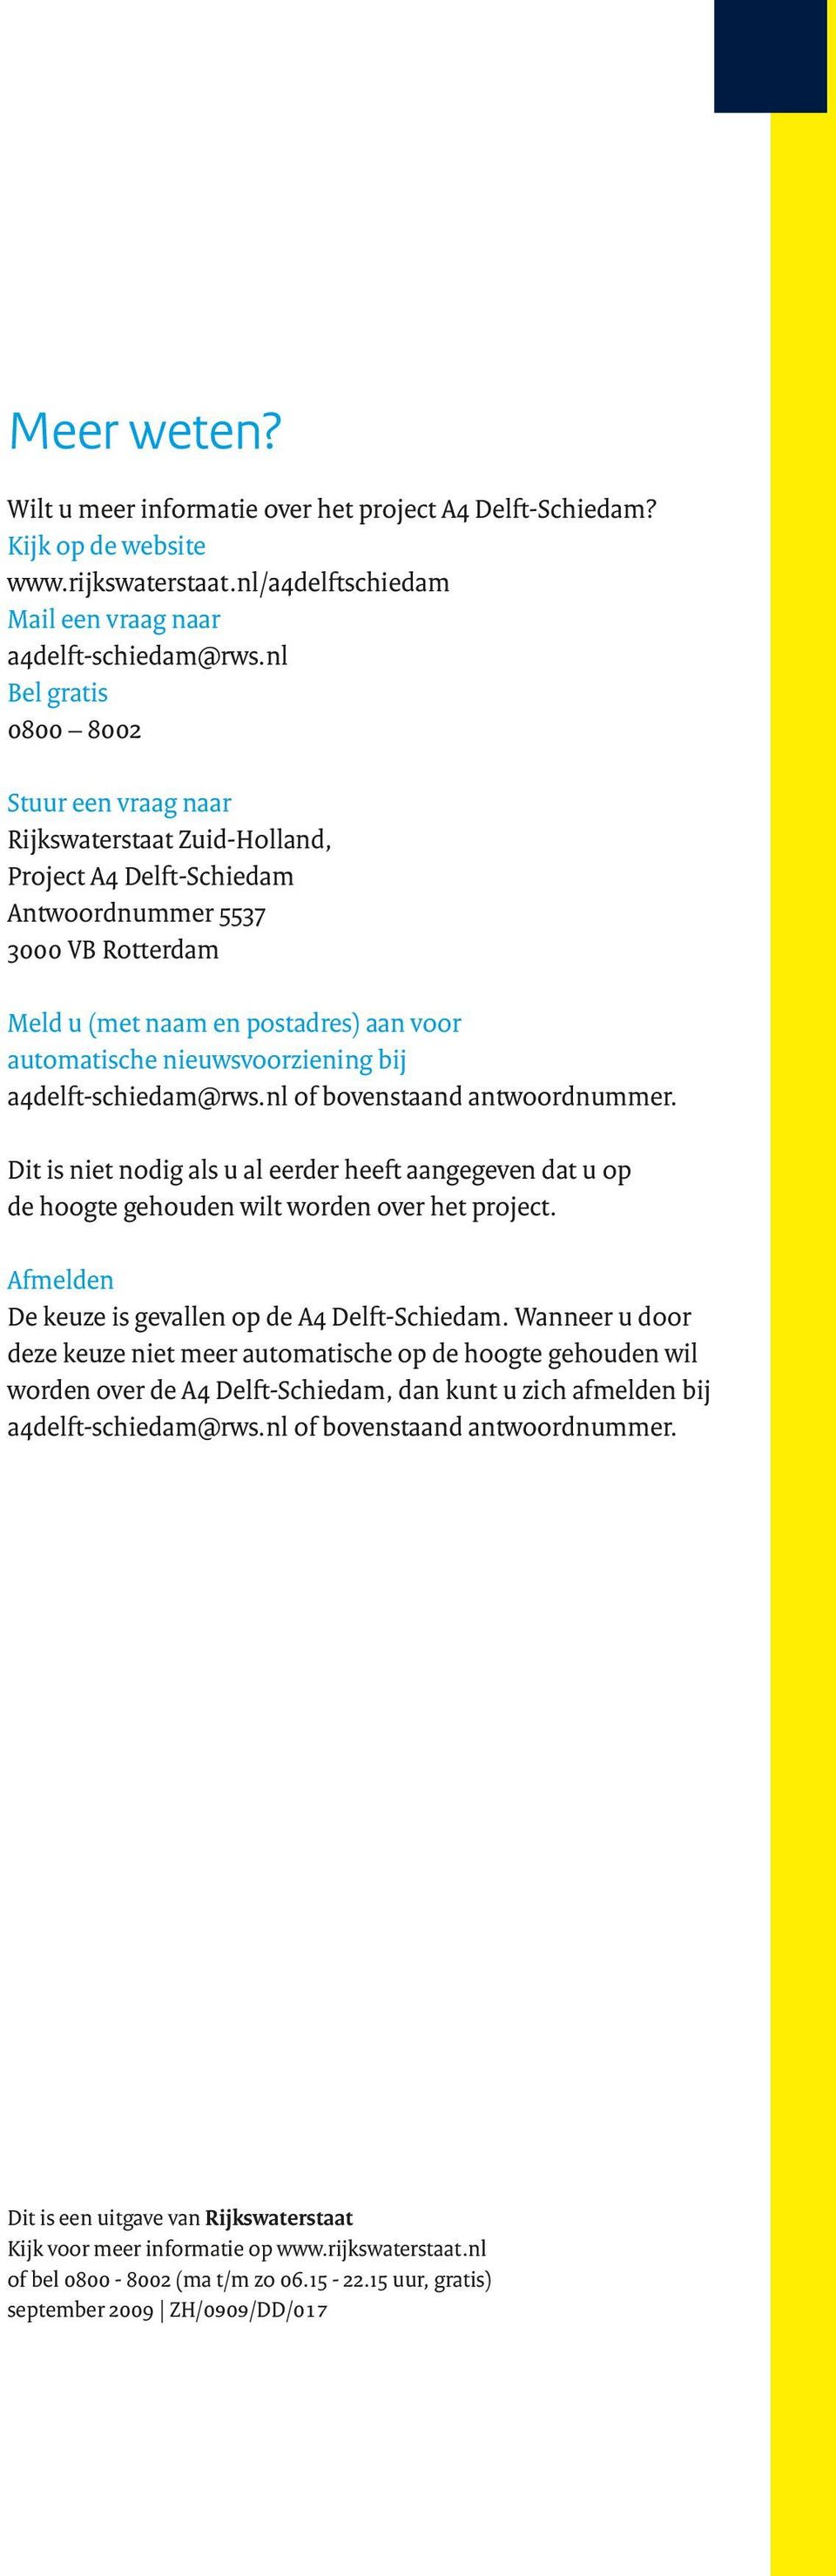 nieuwsvoorziening bij a4delft-schiedam@rws.nl of bovenstaand antwoordnummer. Dit is niet nodig als u al eerder heeft aangegeven dat u op de hoogte gehouden wilt worden over het project.